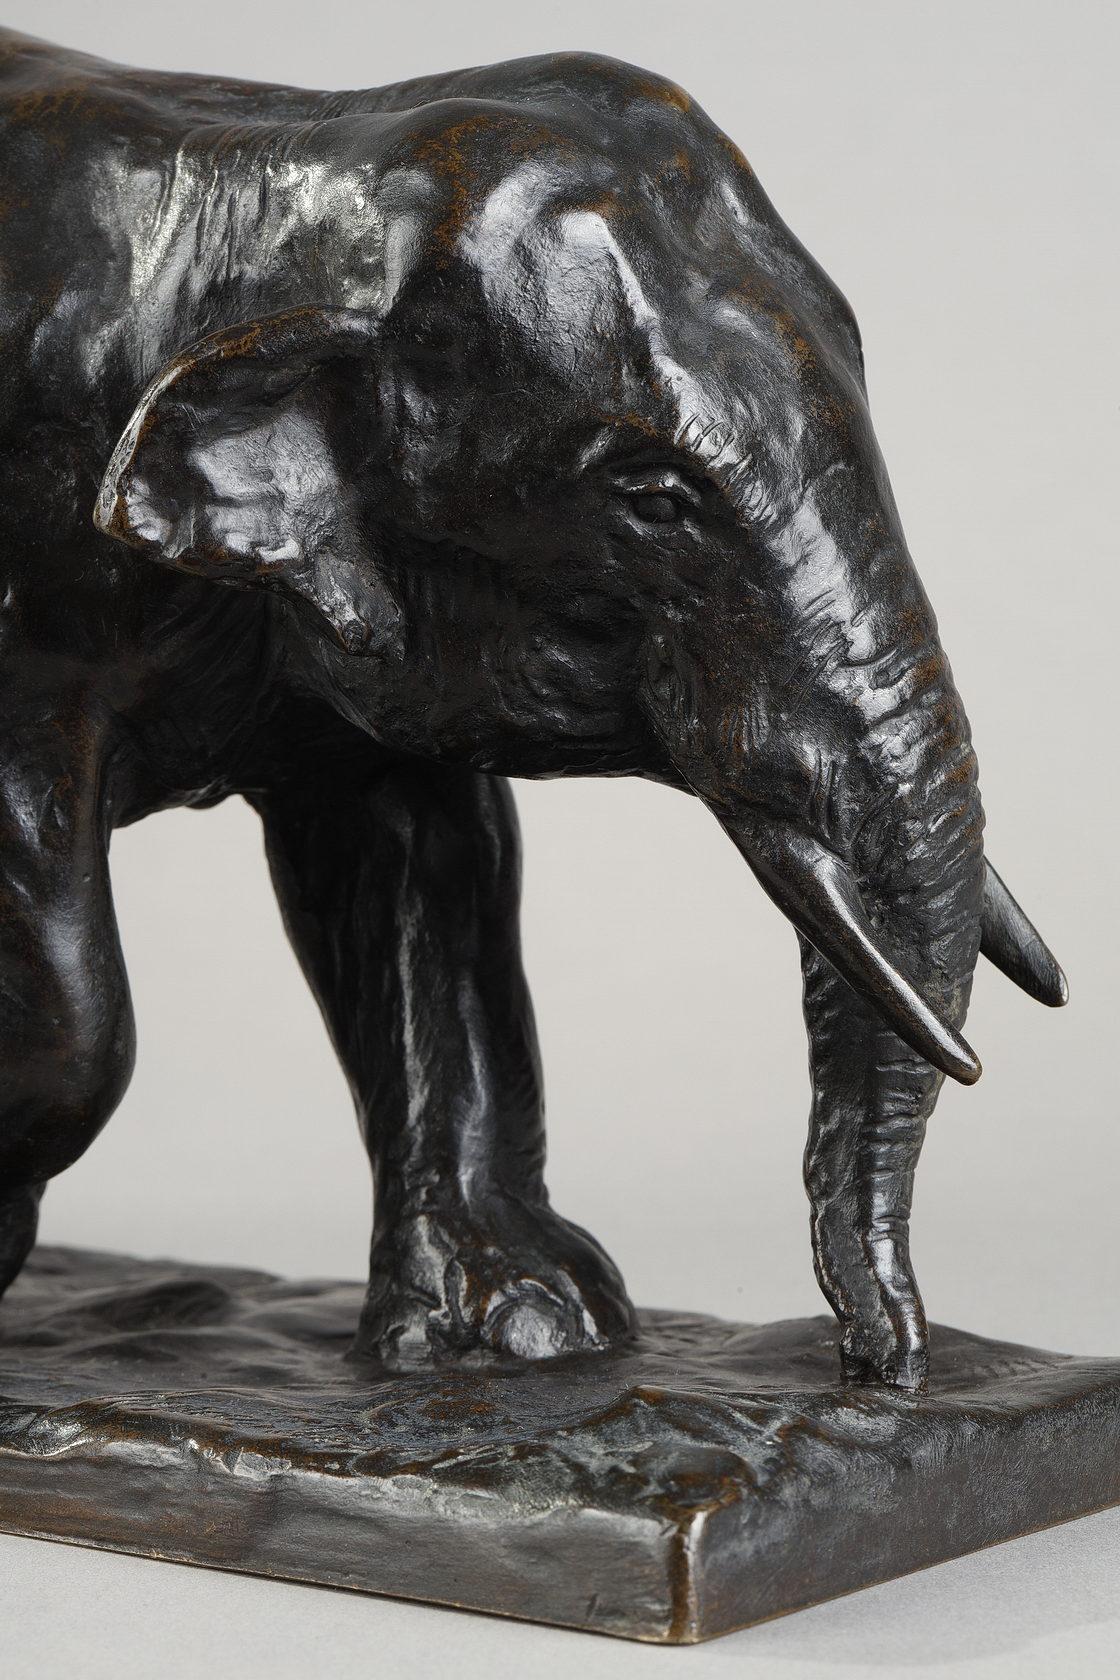 Le trot de l'éléphant - Sculpture de Roger Godchaux